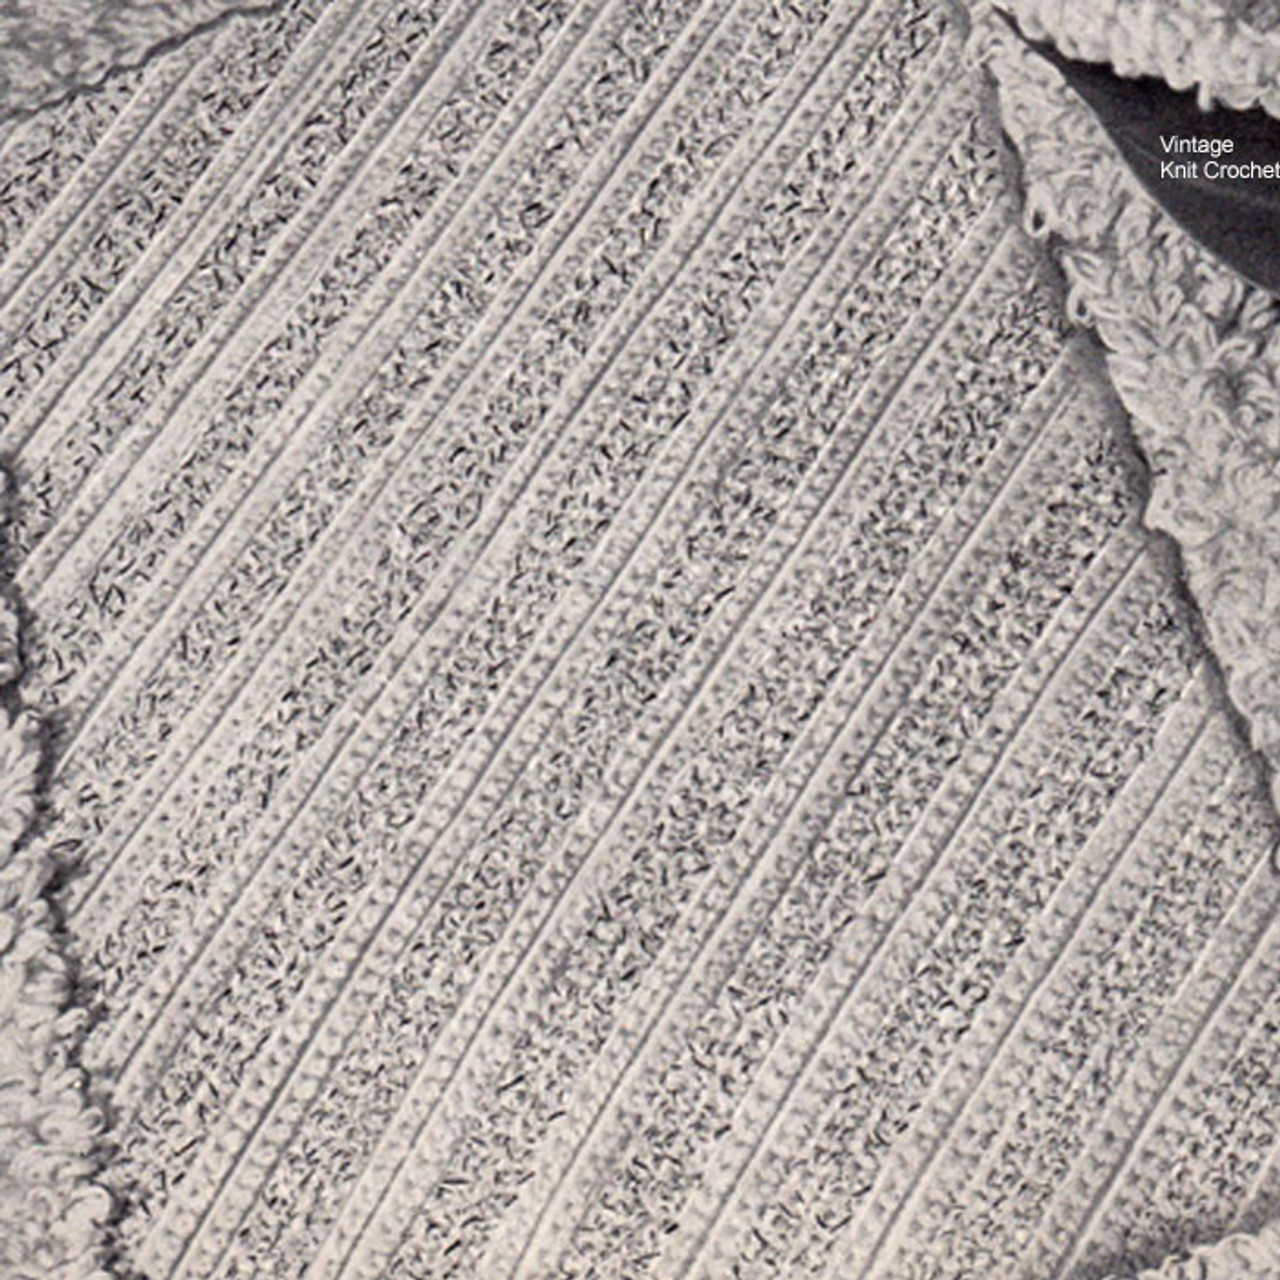 Bathroom Rug Crochet Pattern with Loop Stitch Border